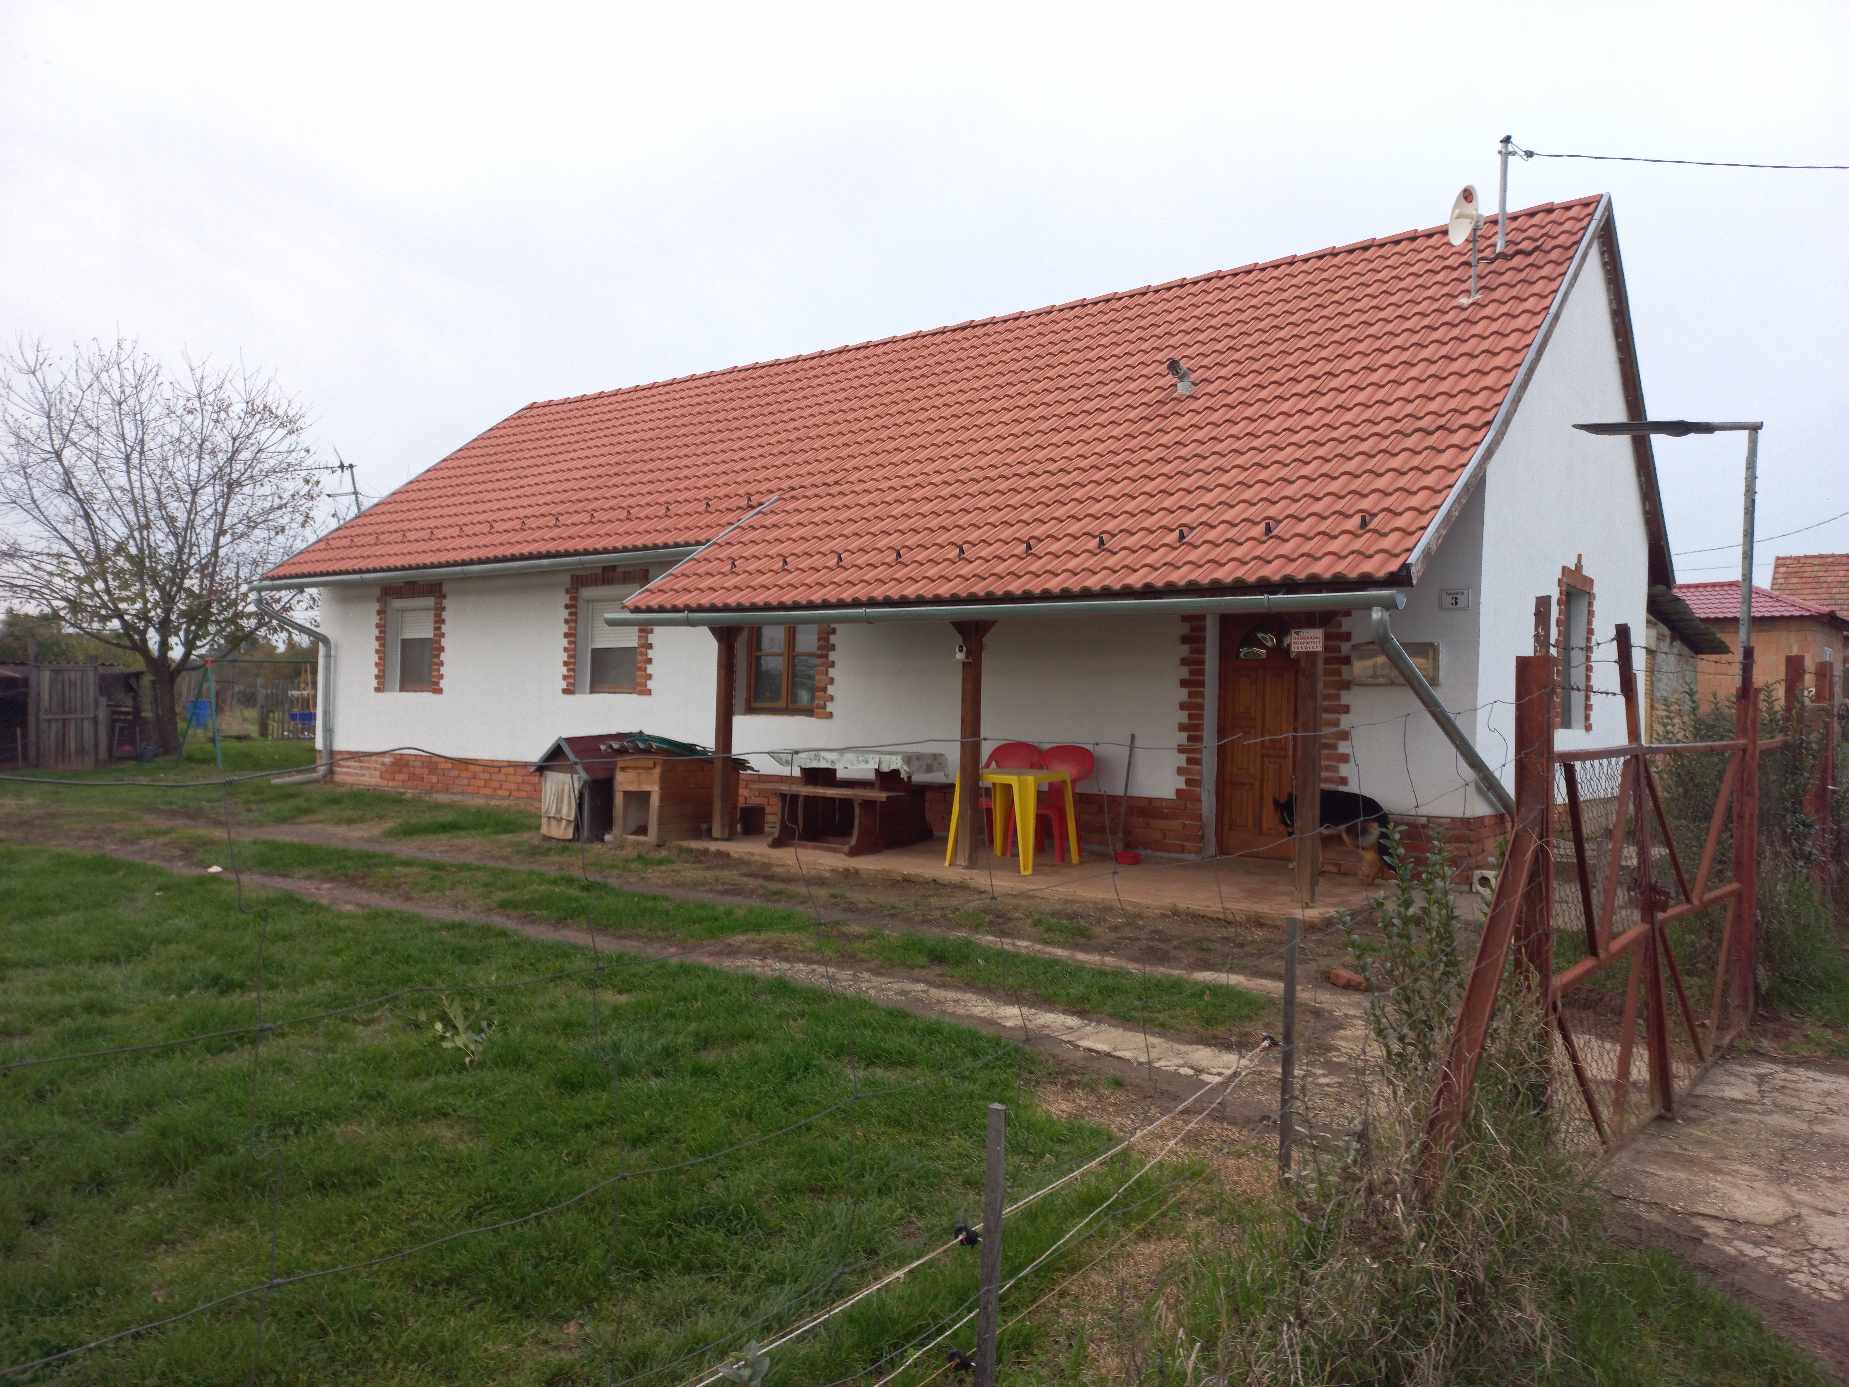 Szigetvár/ Becefa  Huis met extra gastenverblijf mogelijk #1487